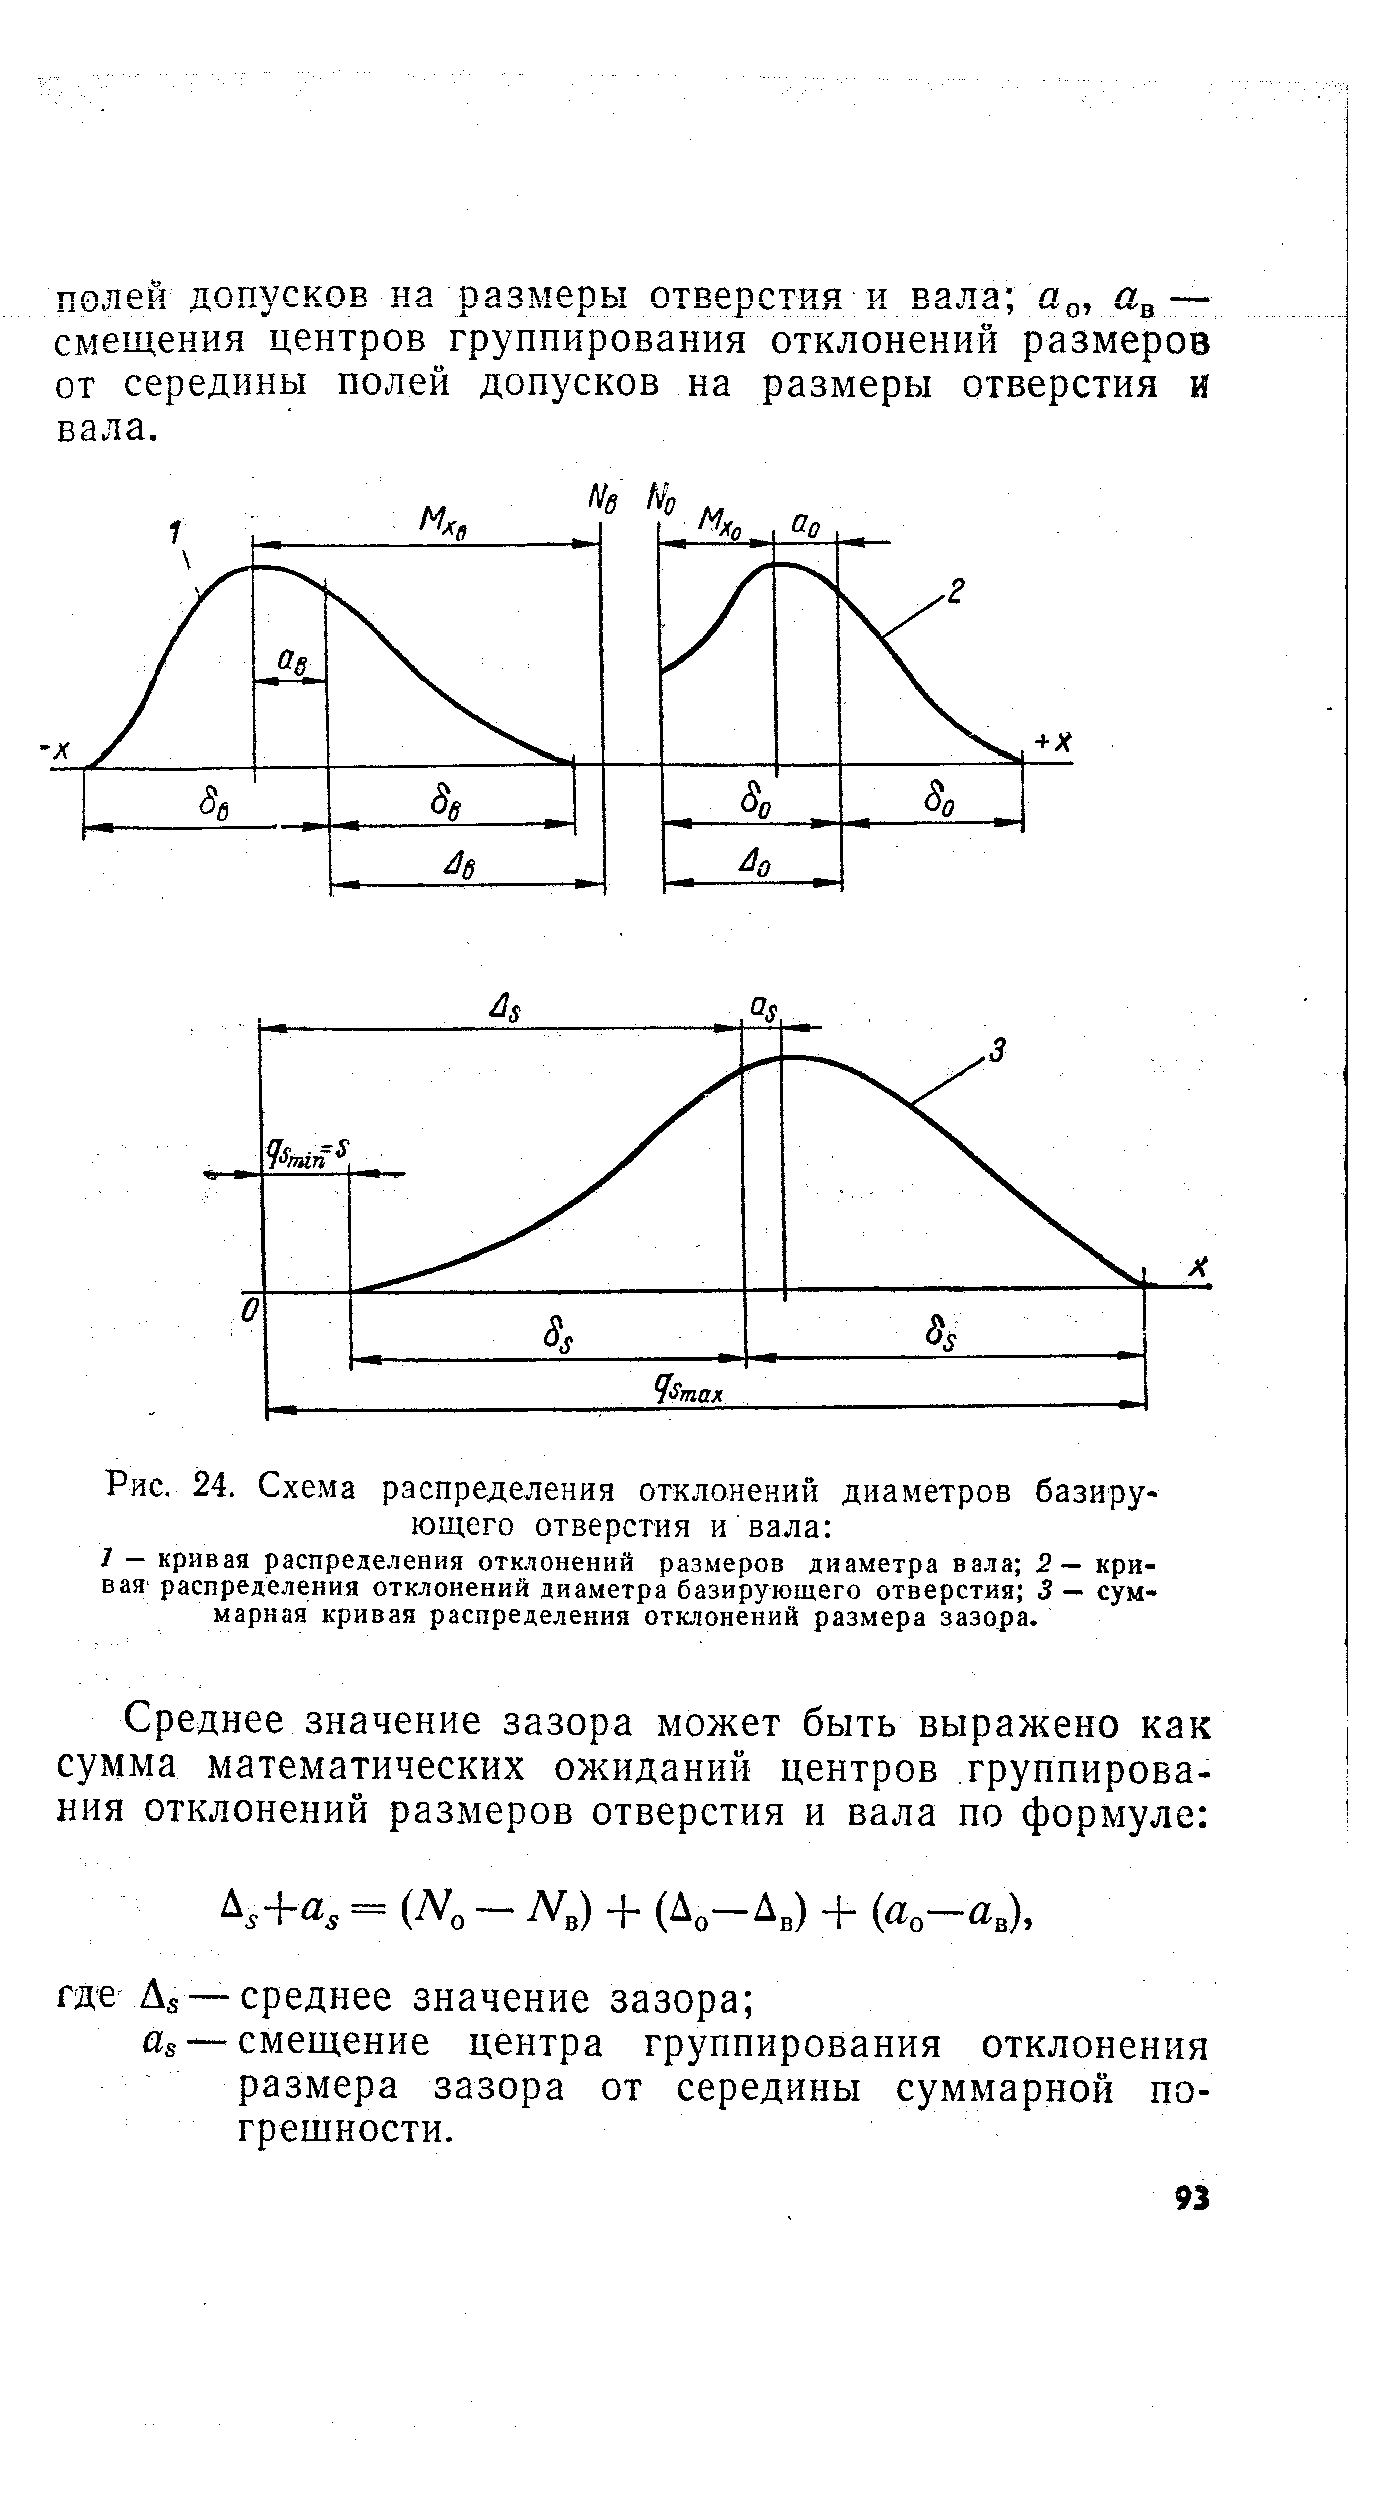 Рис. 24. Схема распределения отклонений диаметров базирующего отверстия и вала 
